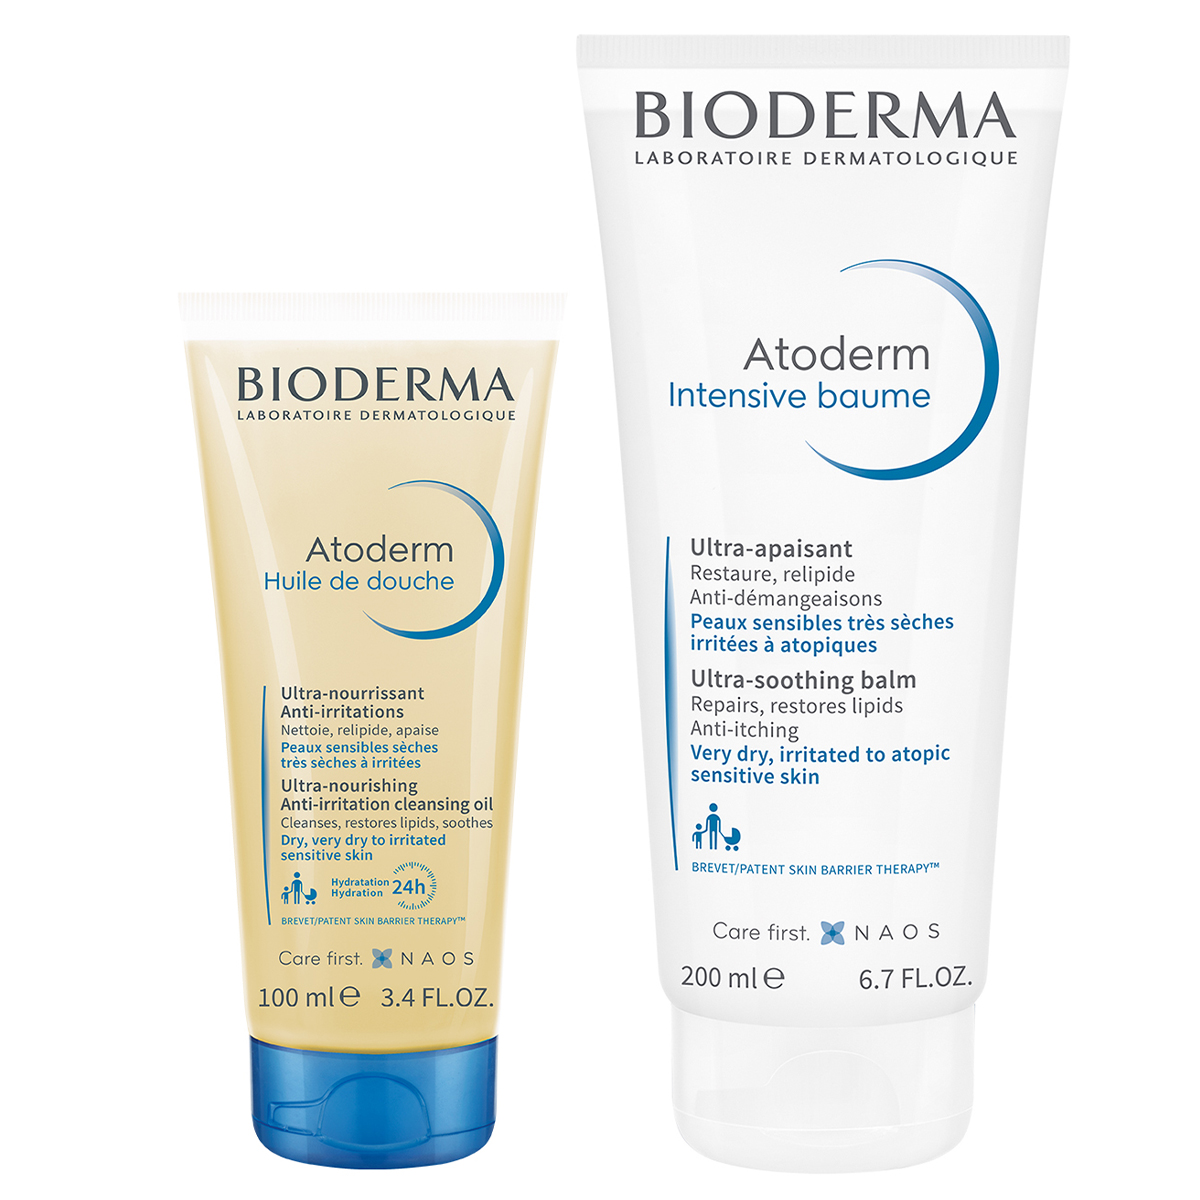 Bioderma Набор Защита и увлажнение сухой, чувствительной и атопичной кожи (Bioderma, Atoderm) bioderma набор бестселлеров для очищения лица и тела масло для душа 1 л мицеллярная вода 500 мл bioderma atoderm